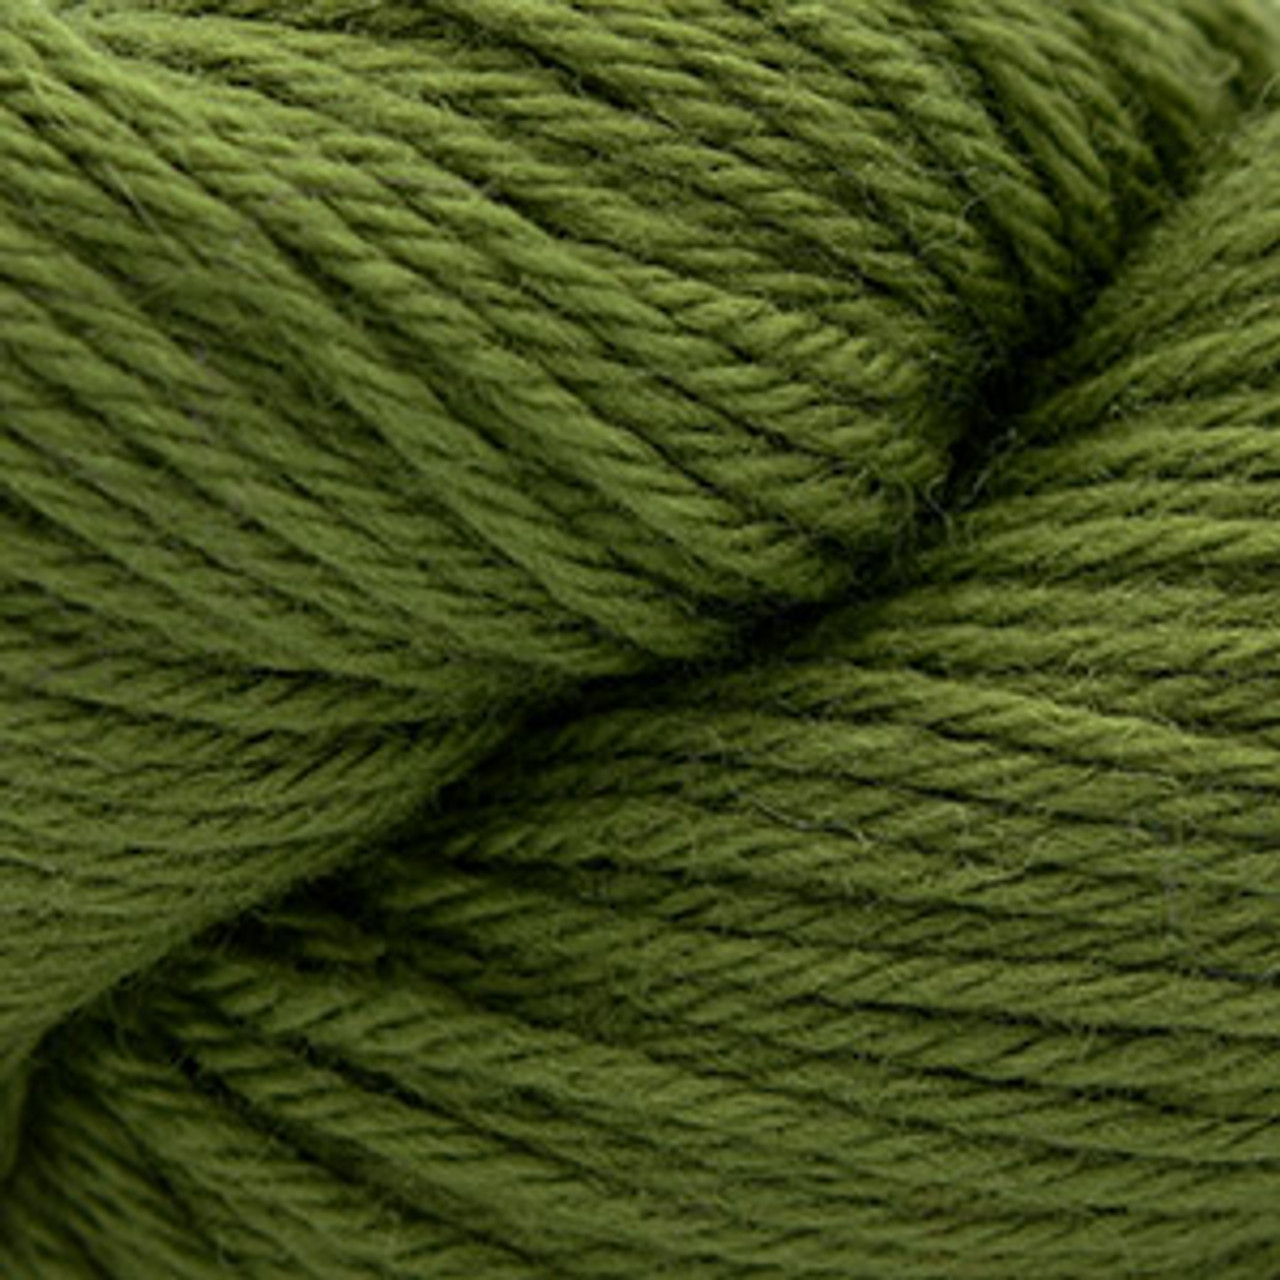 Cascade 220 Peruvian Wool Yarn - Calla Green 1052